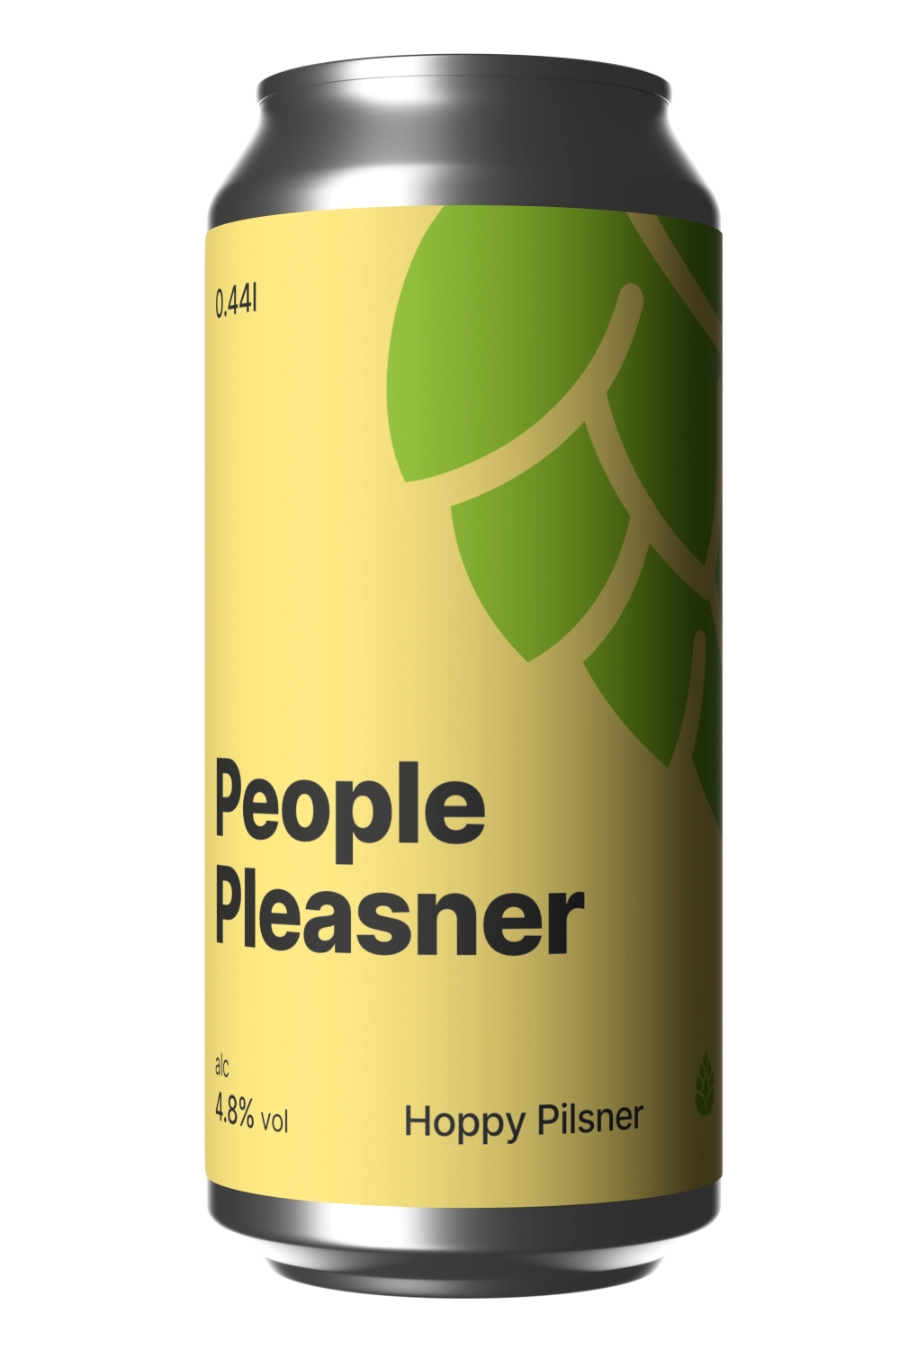 People Pleasner